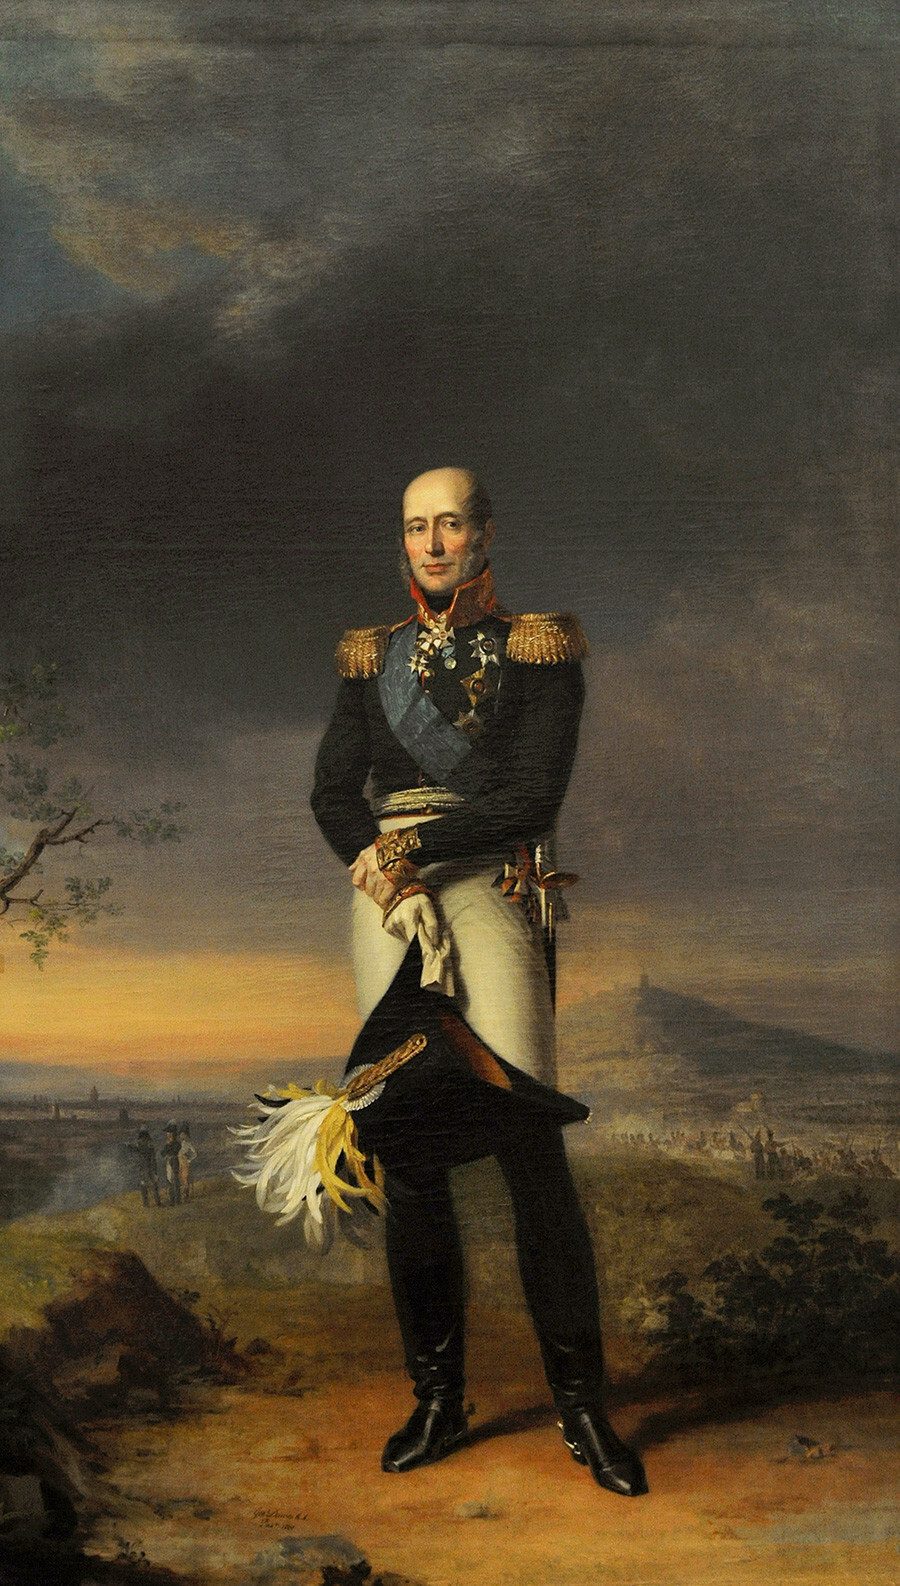 Mikhail B. Barclay de Tolly (1761-1818). Marechal de campo russo e Ministro da Guerra. Retrato de George Dawe (1781-1829), 1829. Museu Hermitage, São Petersburgo